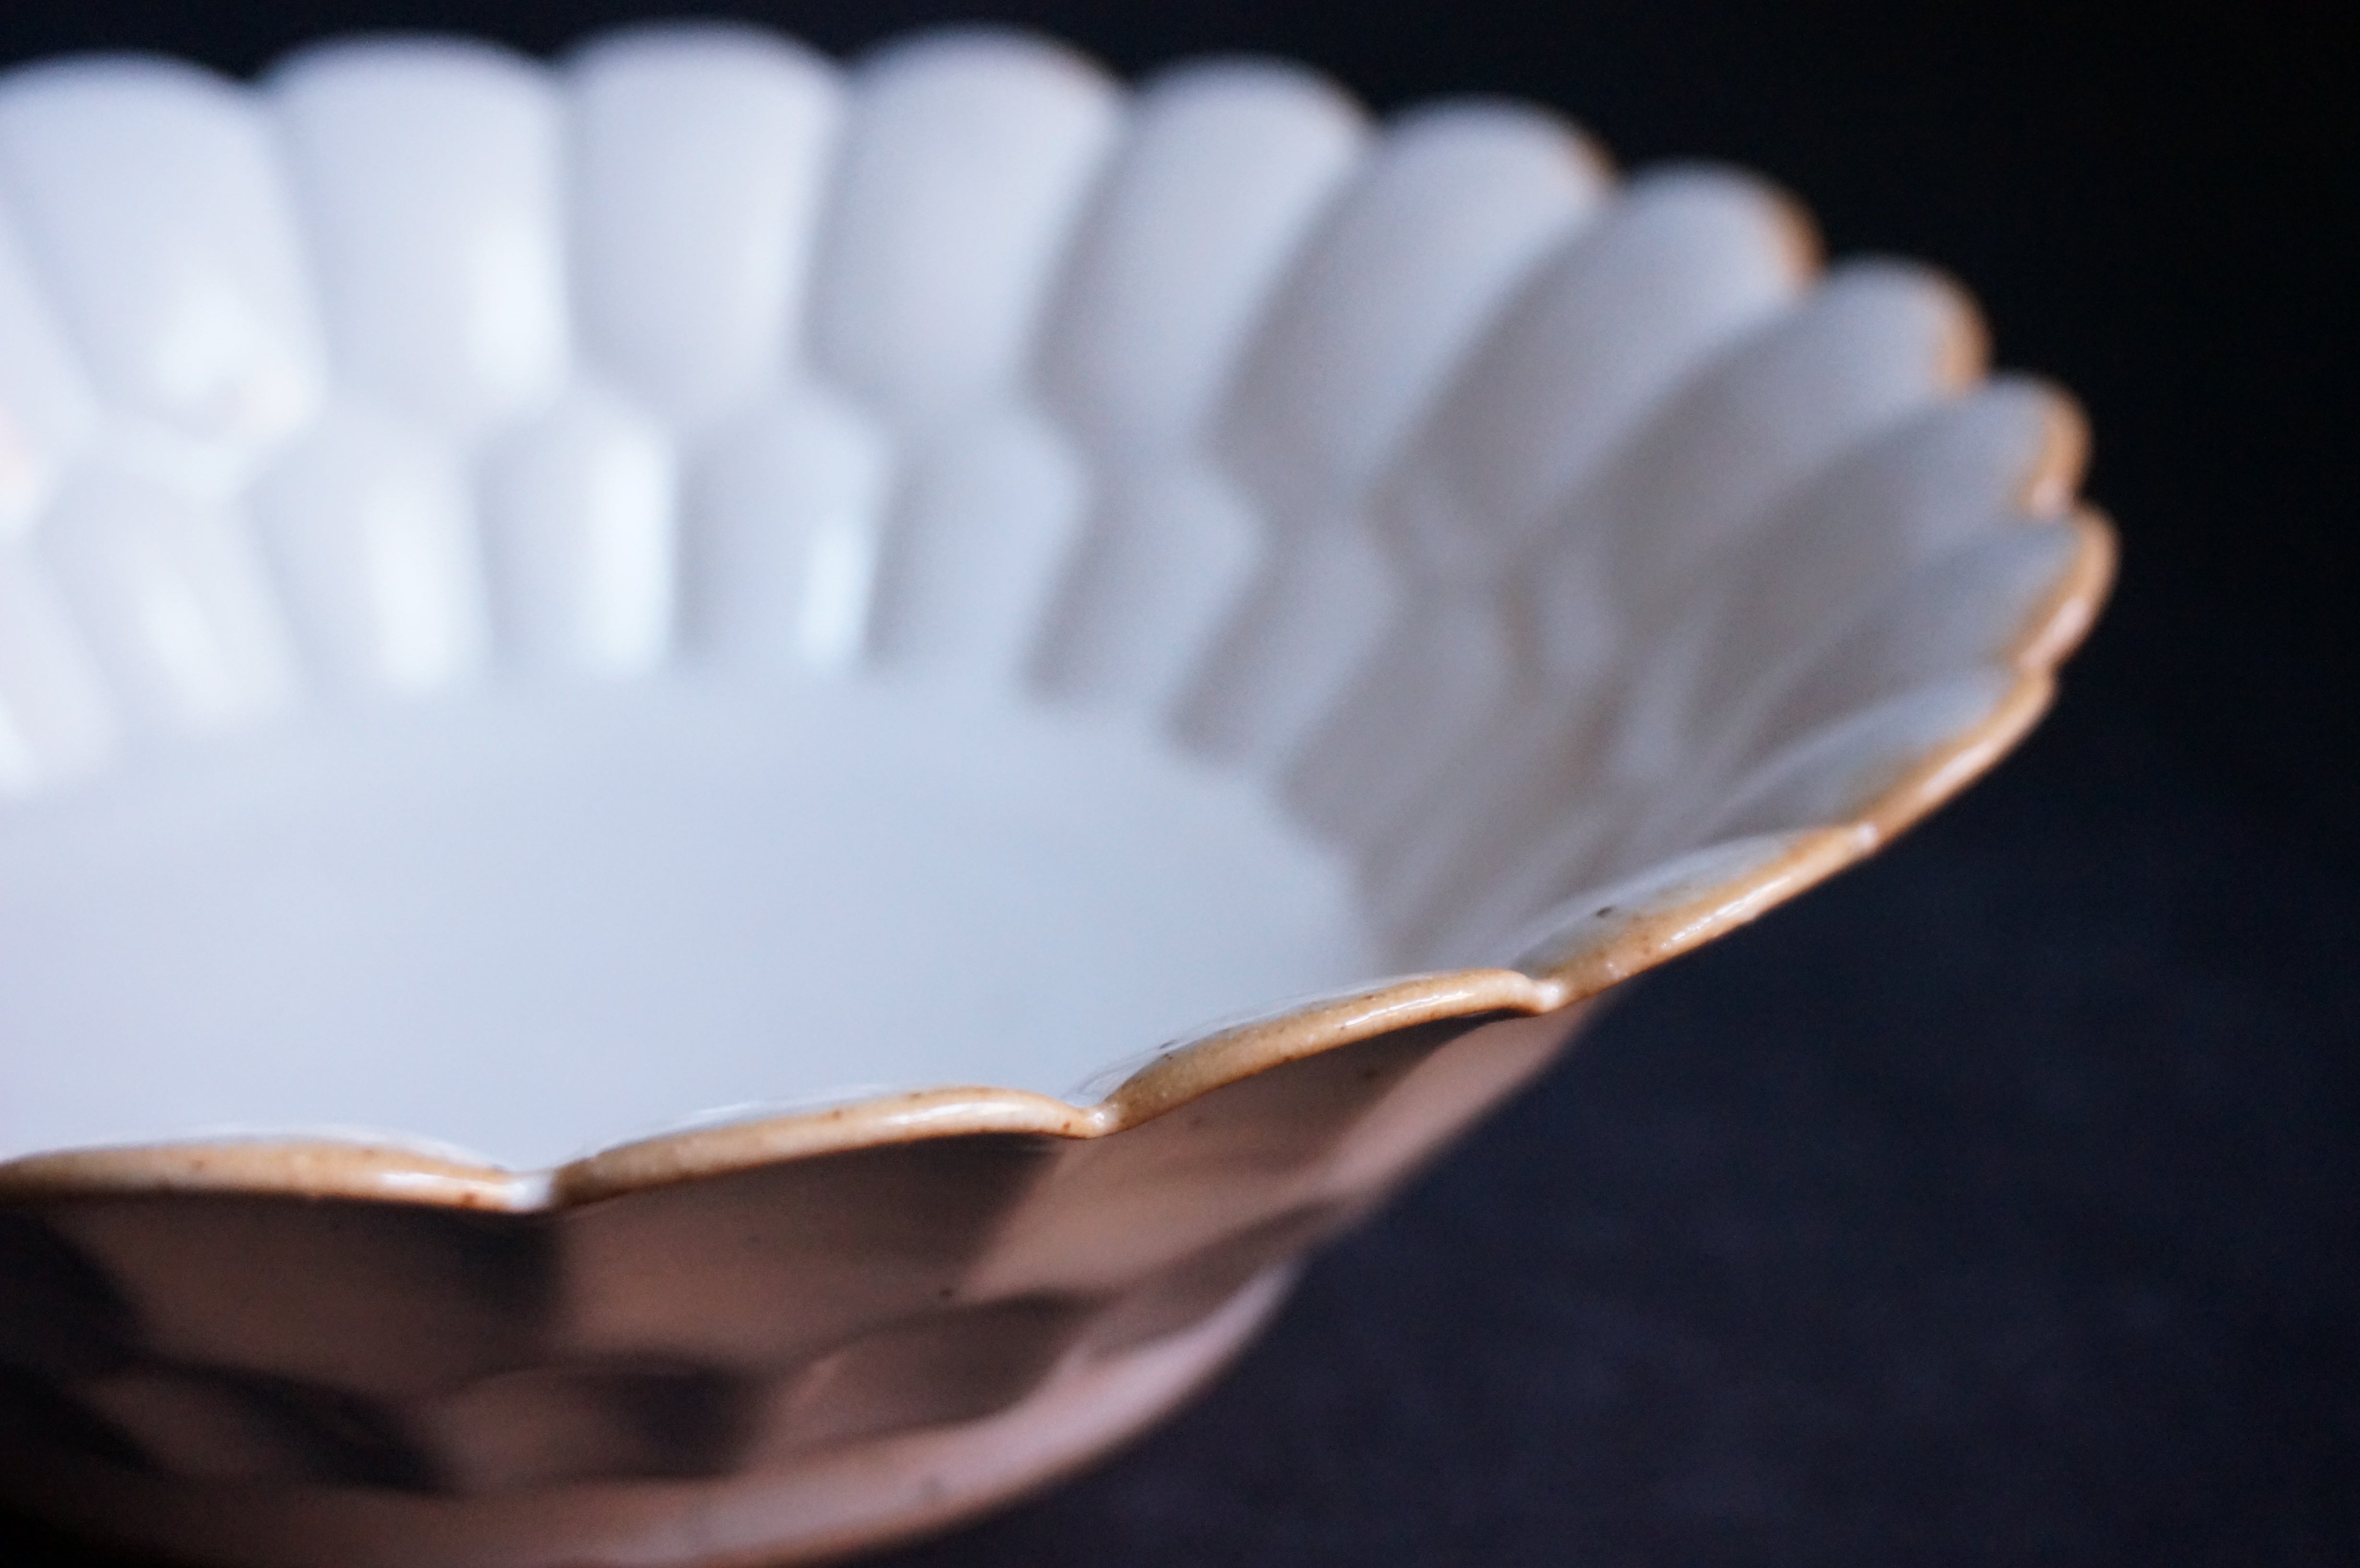 白釉菊鉢